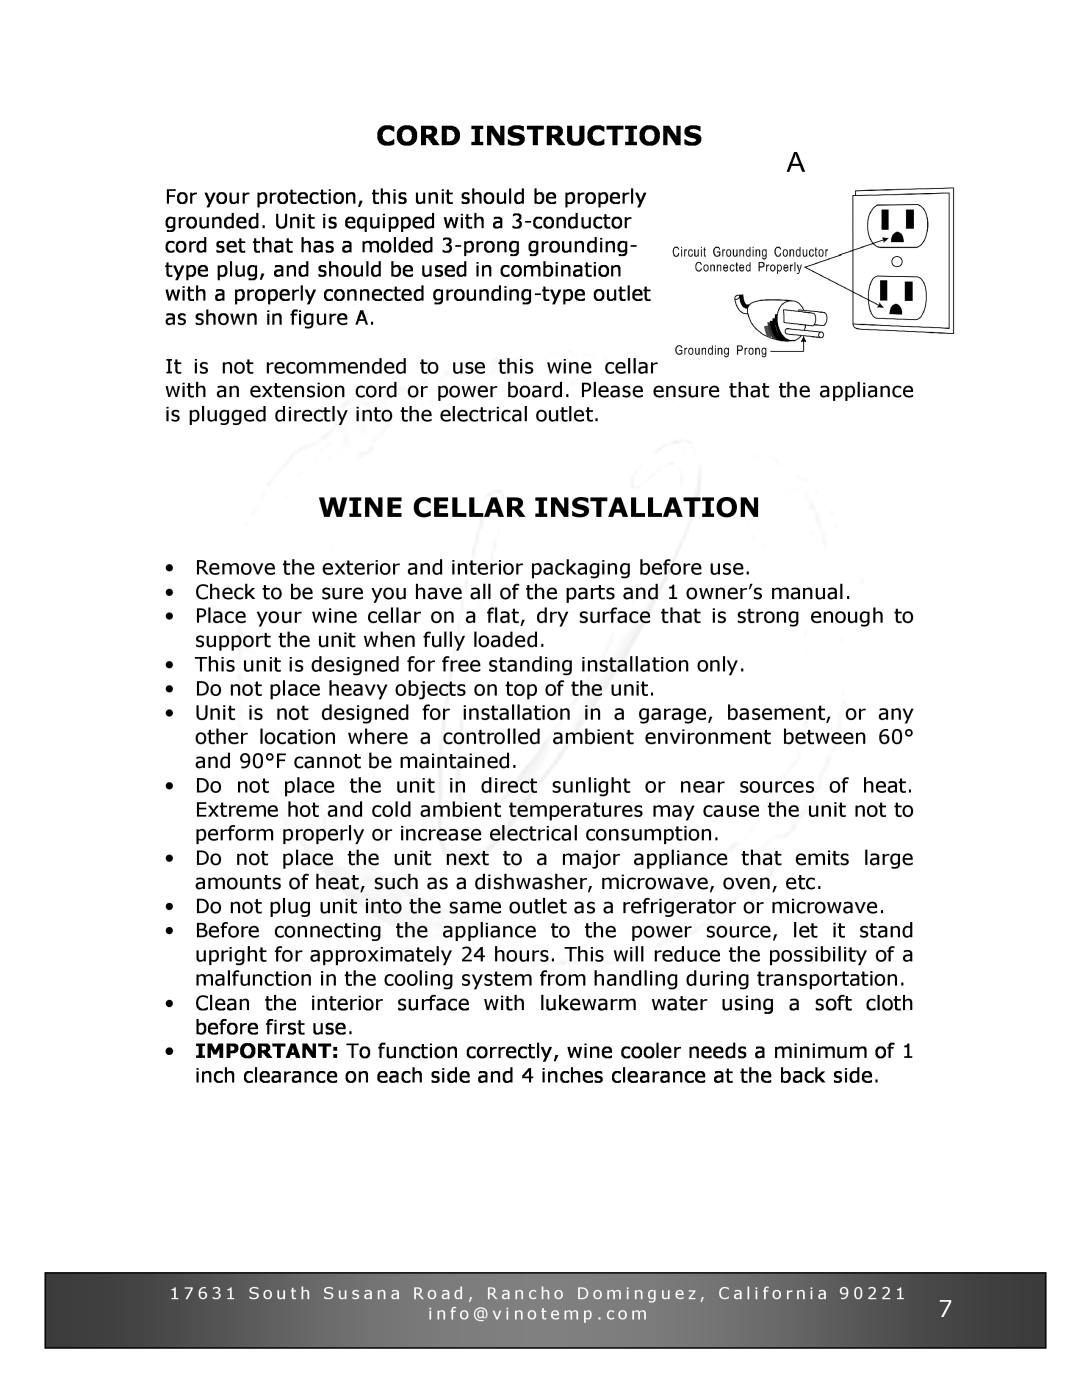 Vinotemp VT-34 TS owner manual Cord Instructions, Wine Cellar Installation 